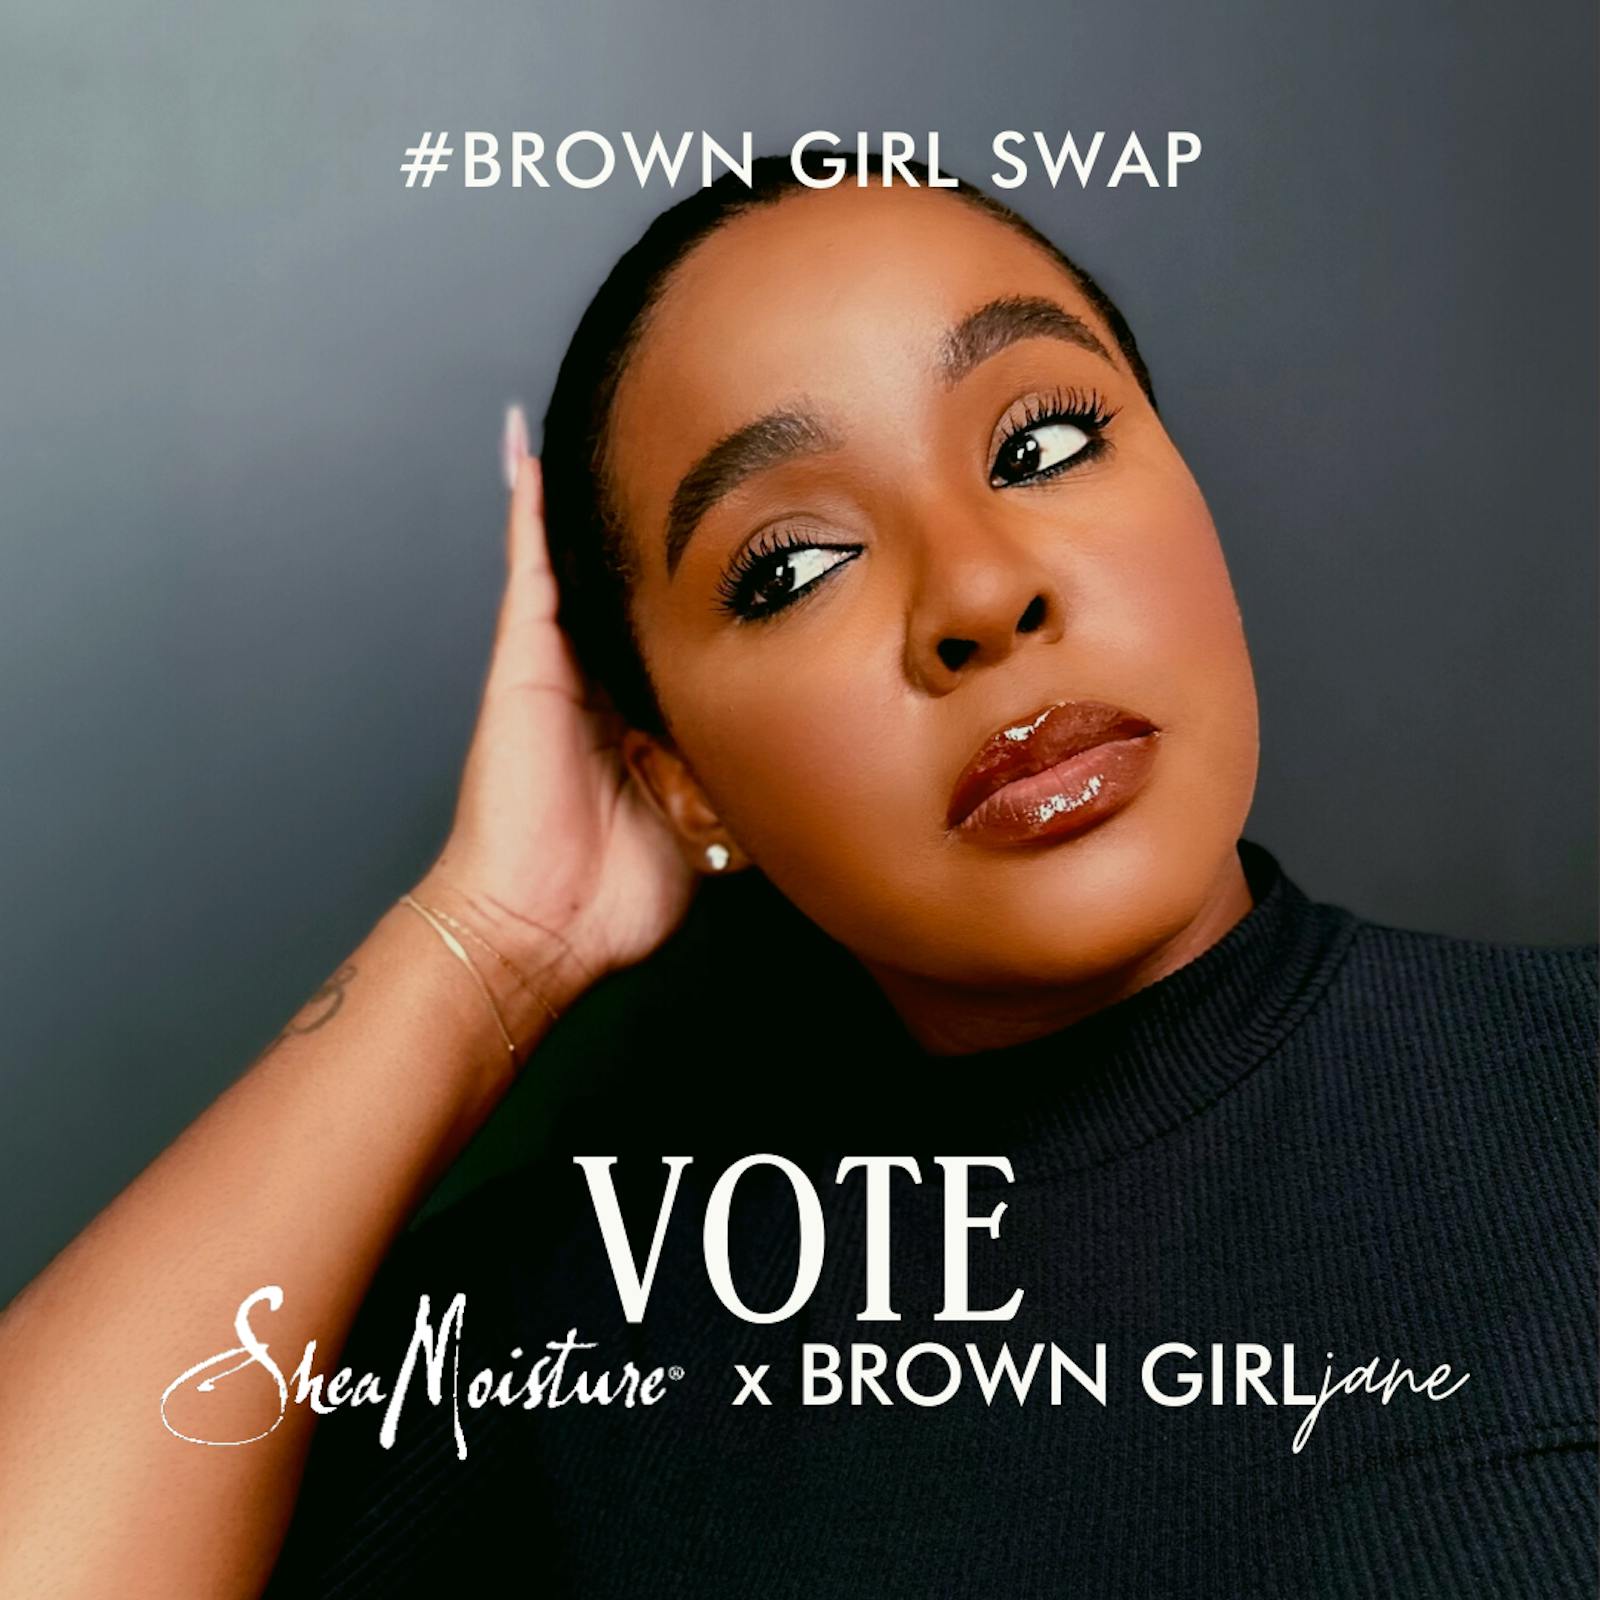 VOTE FOR DEON LIBRA TO WIN $25,000! | #BrownGirlSwap Grant ✨